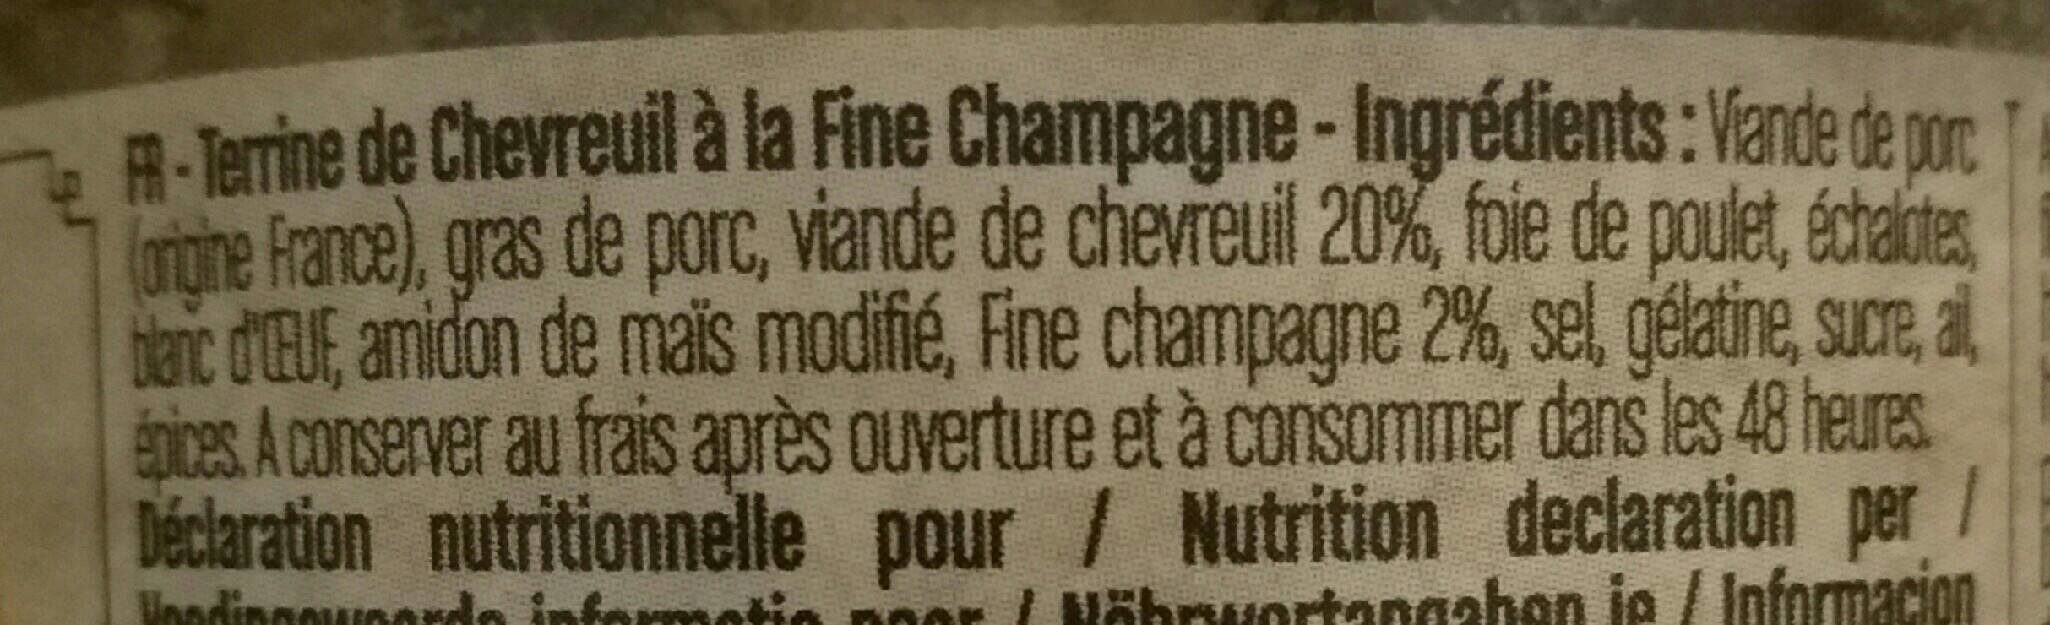 Terrine chevreuil à la fine champagne - Tableau nutritionnel